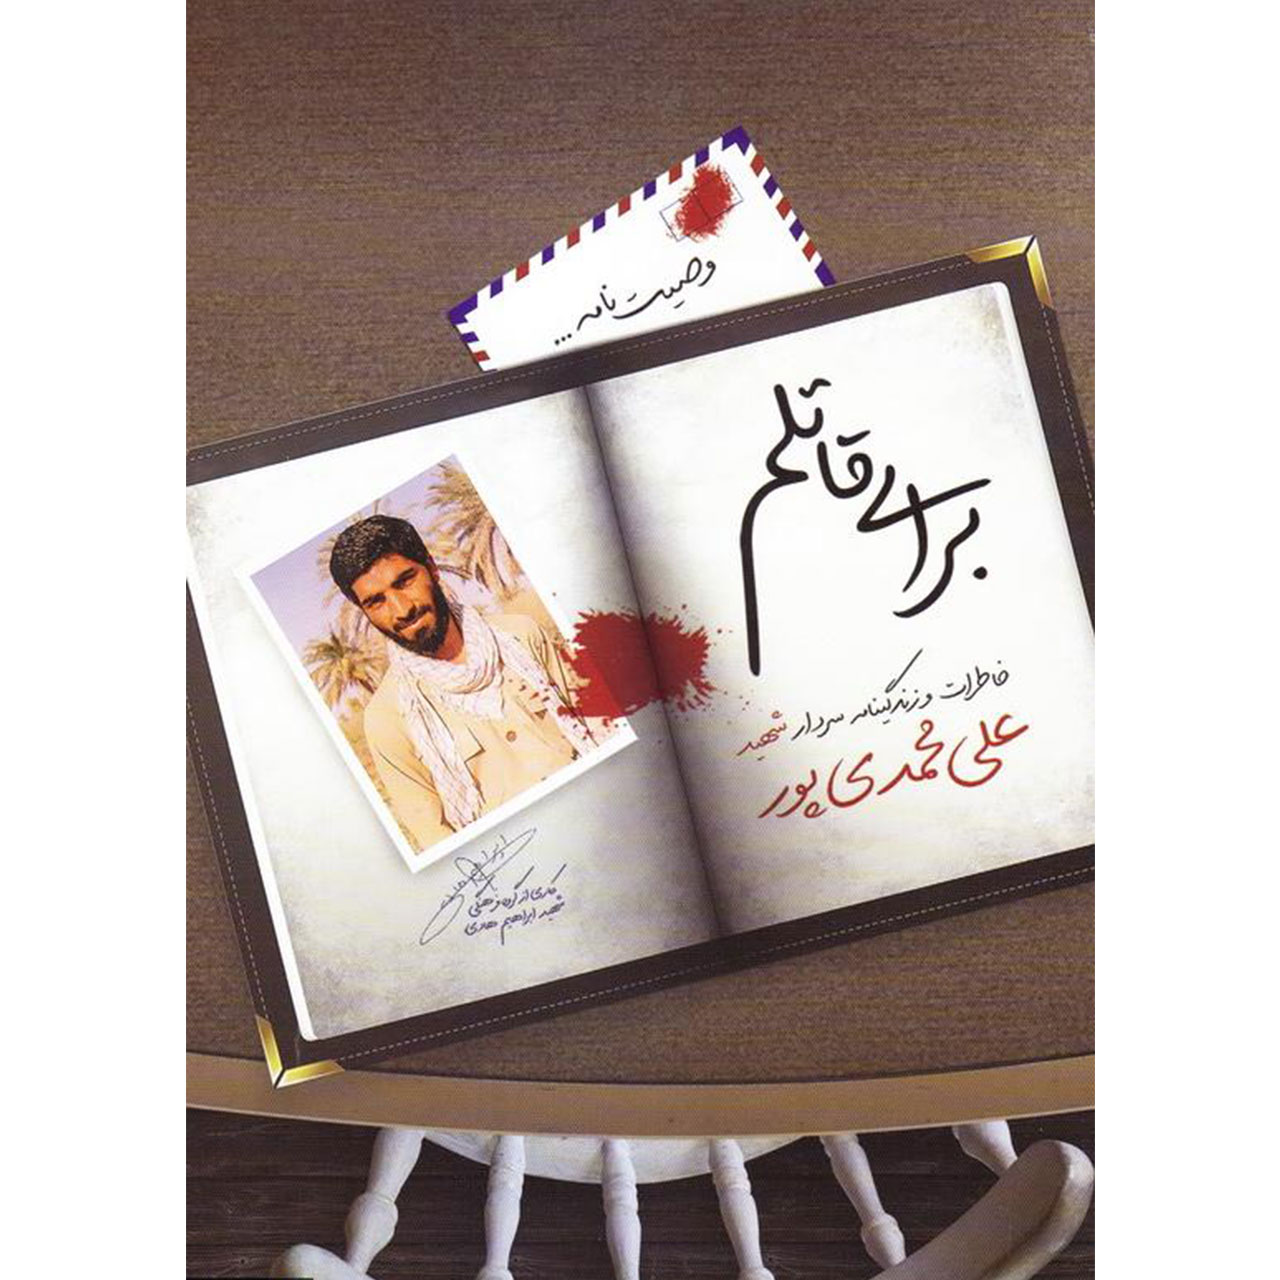 کتاب برای قاتلم: خاطرات و زندگینامه سردار شهید علی محمدی پور - اثر جمعی از نویسندگان